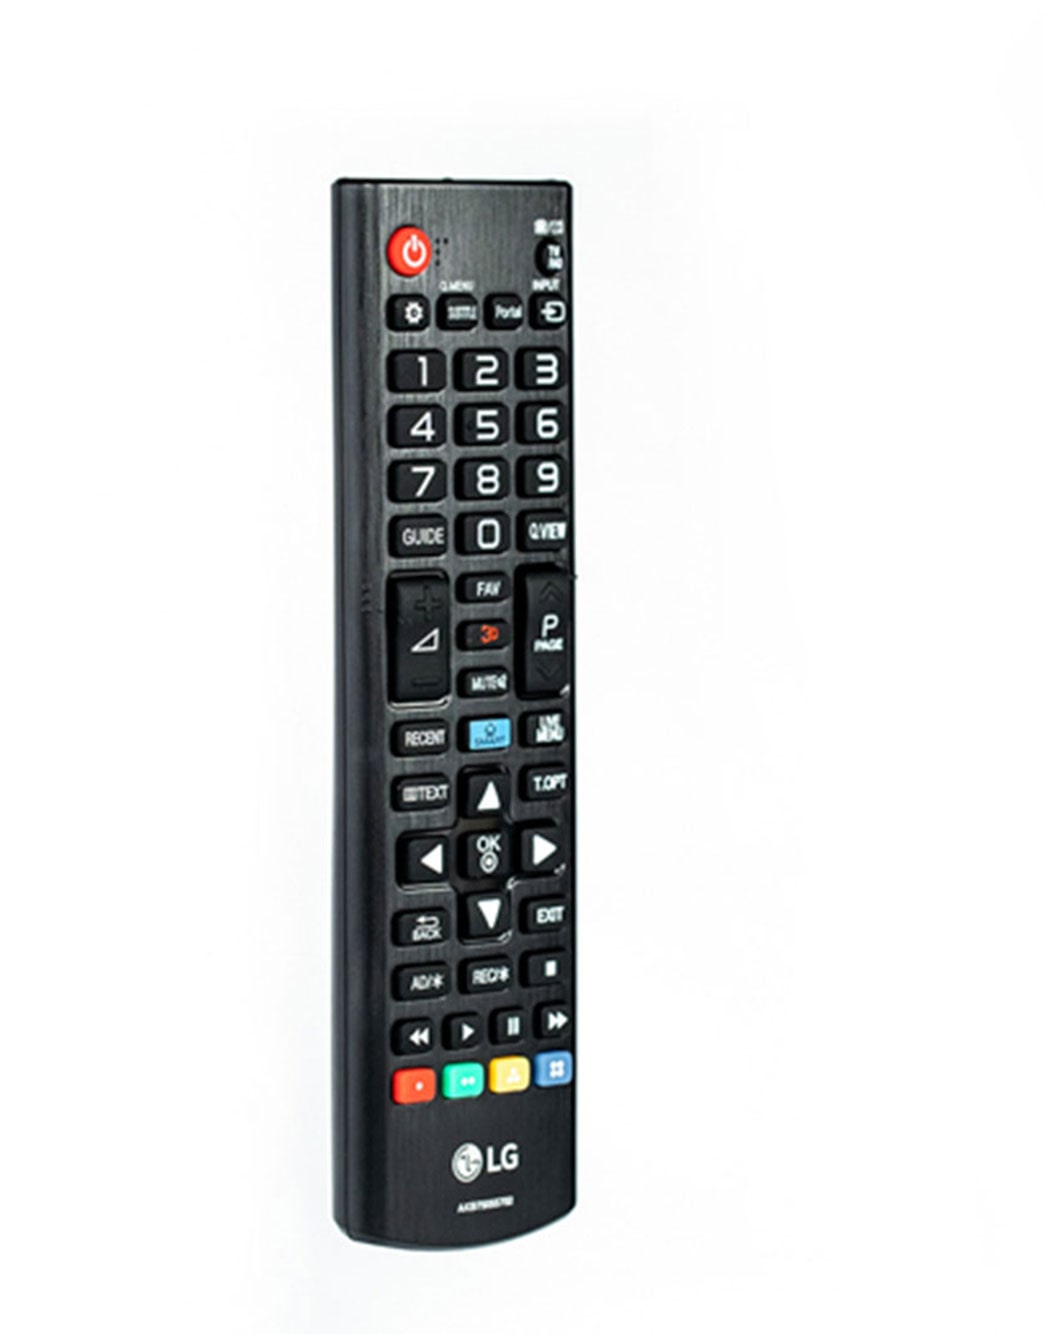 LG Điều khiển tivi LG: Điều khiển tivi của bạn trở nên đơn giản và thuận tiện hơn bao giờ hết, với bộ điều khiển tivi LG dành cho sản phẩm LG. Hãy trải nghiệm cảm giác tuyệt vời khi có thể kiểm soát tất cả các tính năng của TV chỉ bằng một chiếc điều khiển đơn giản.